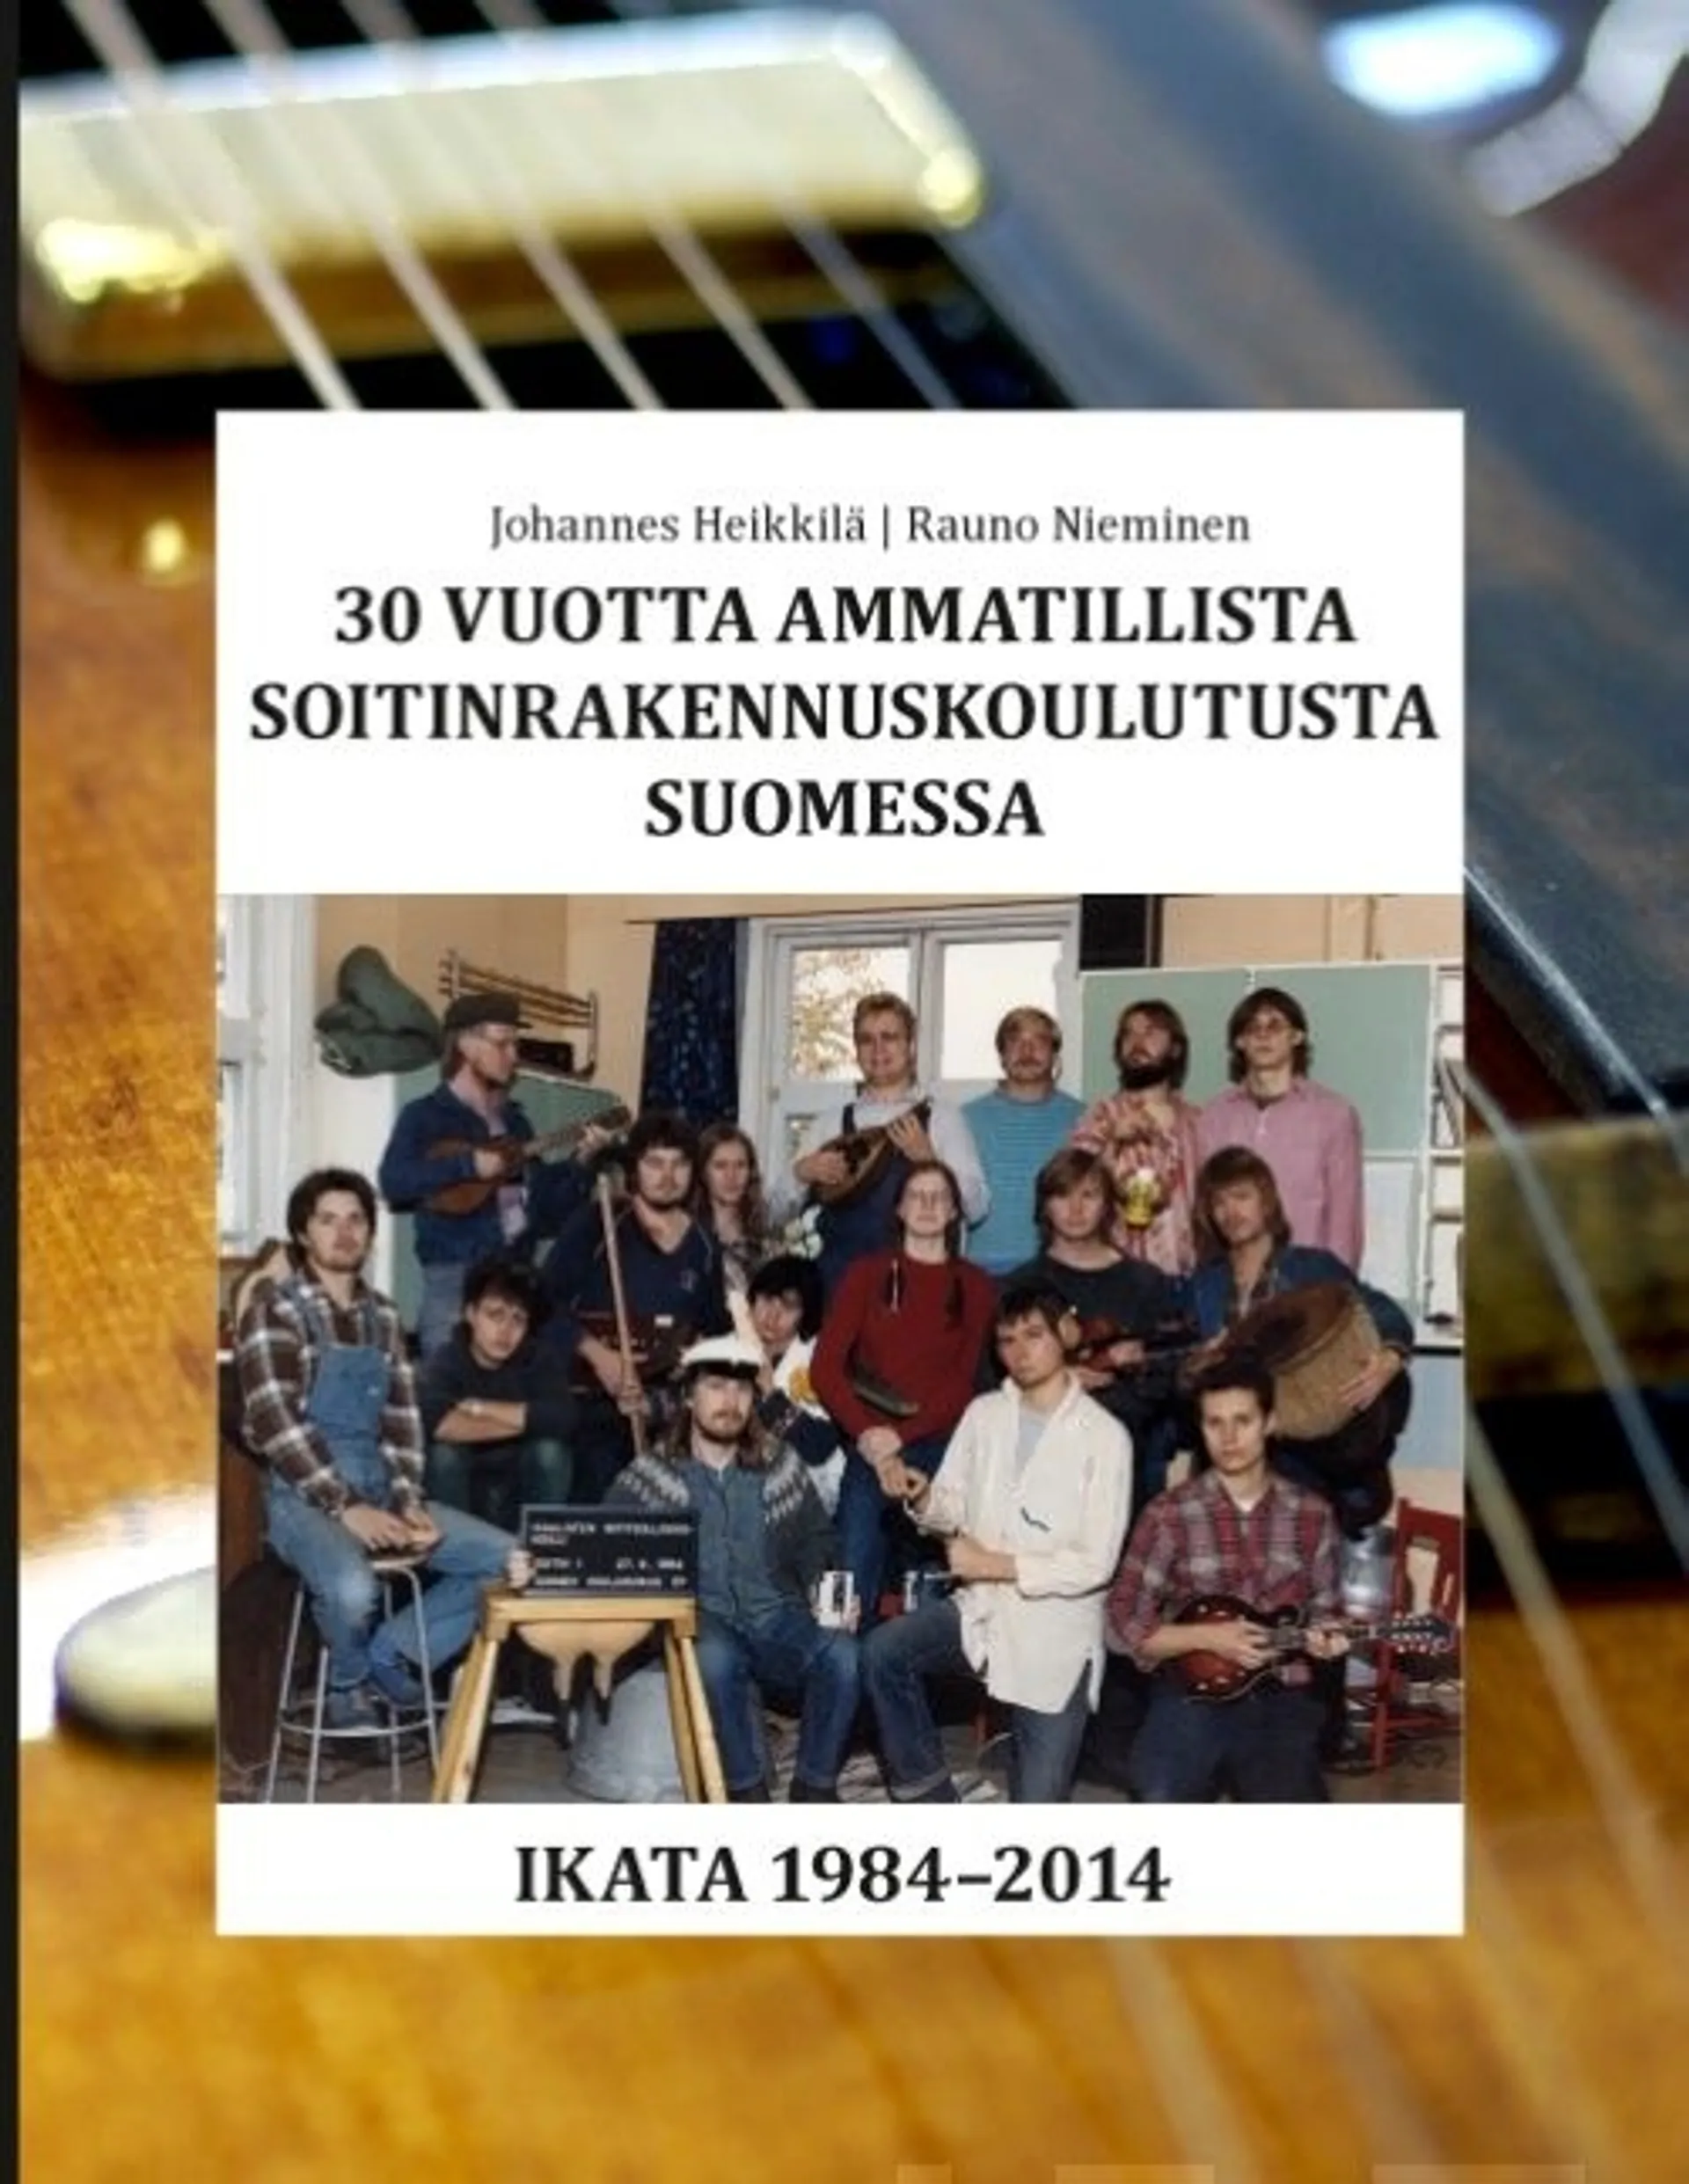 Heikkilä, 30 vuotta ammatillista soitinrakennuskoulutusta Suomessa